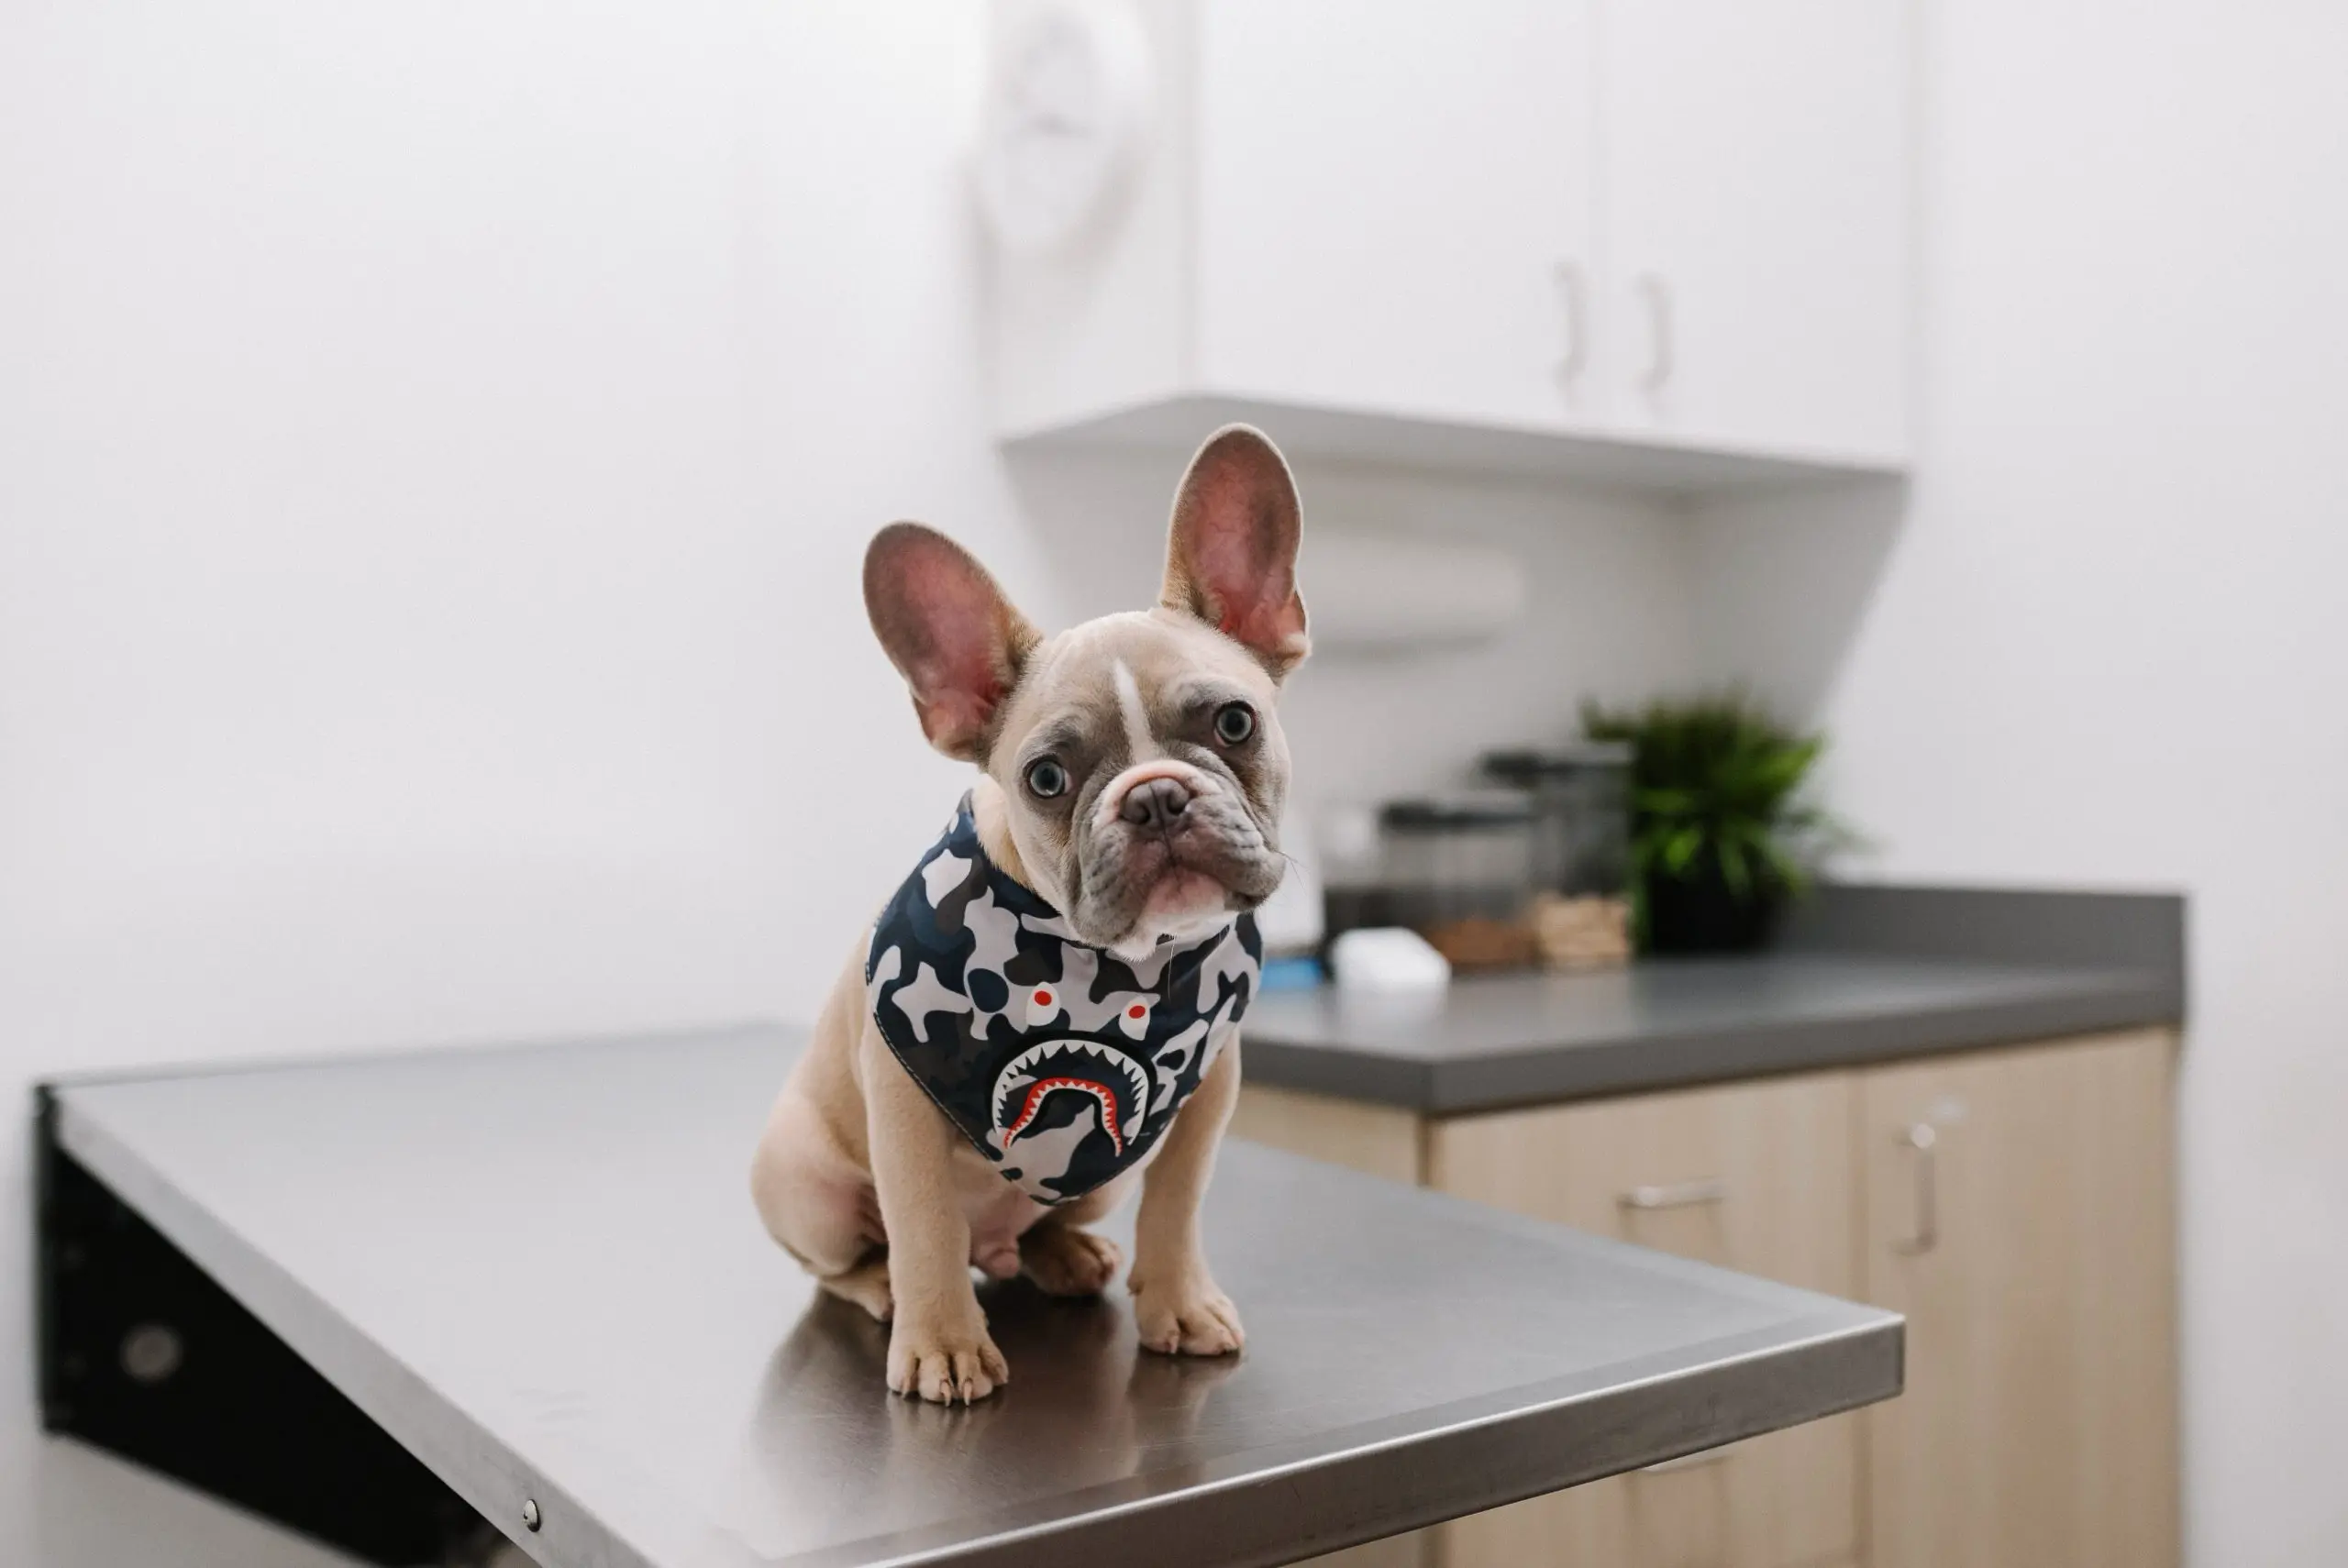 Lys hund med store ører kledd i en genser sittende på et operasjonsbord hos en veterinær. Boas-gradering